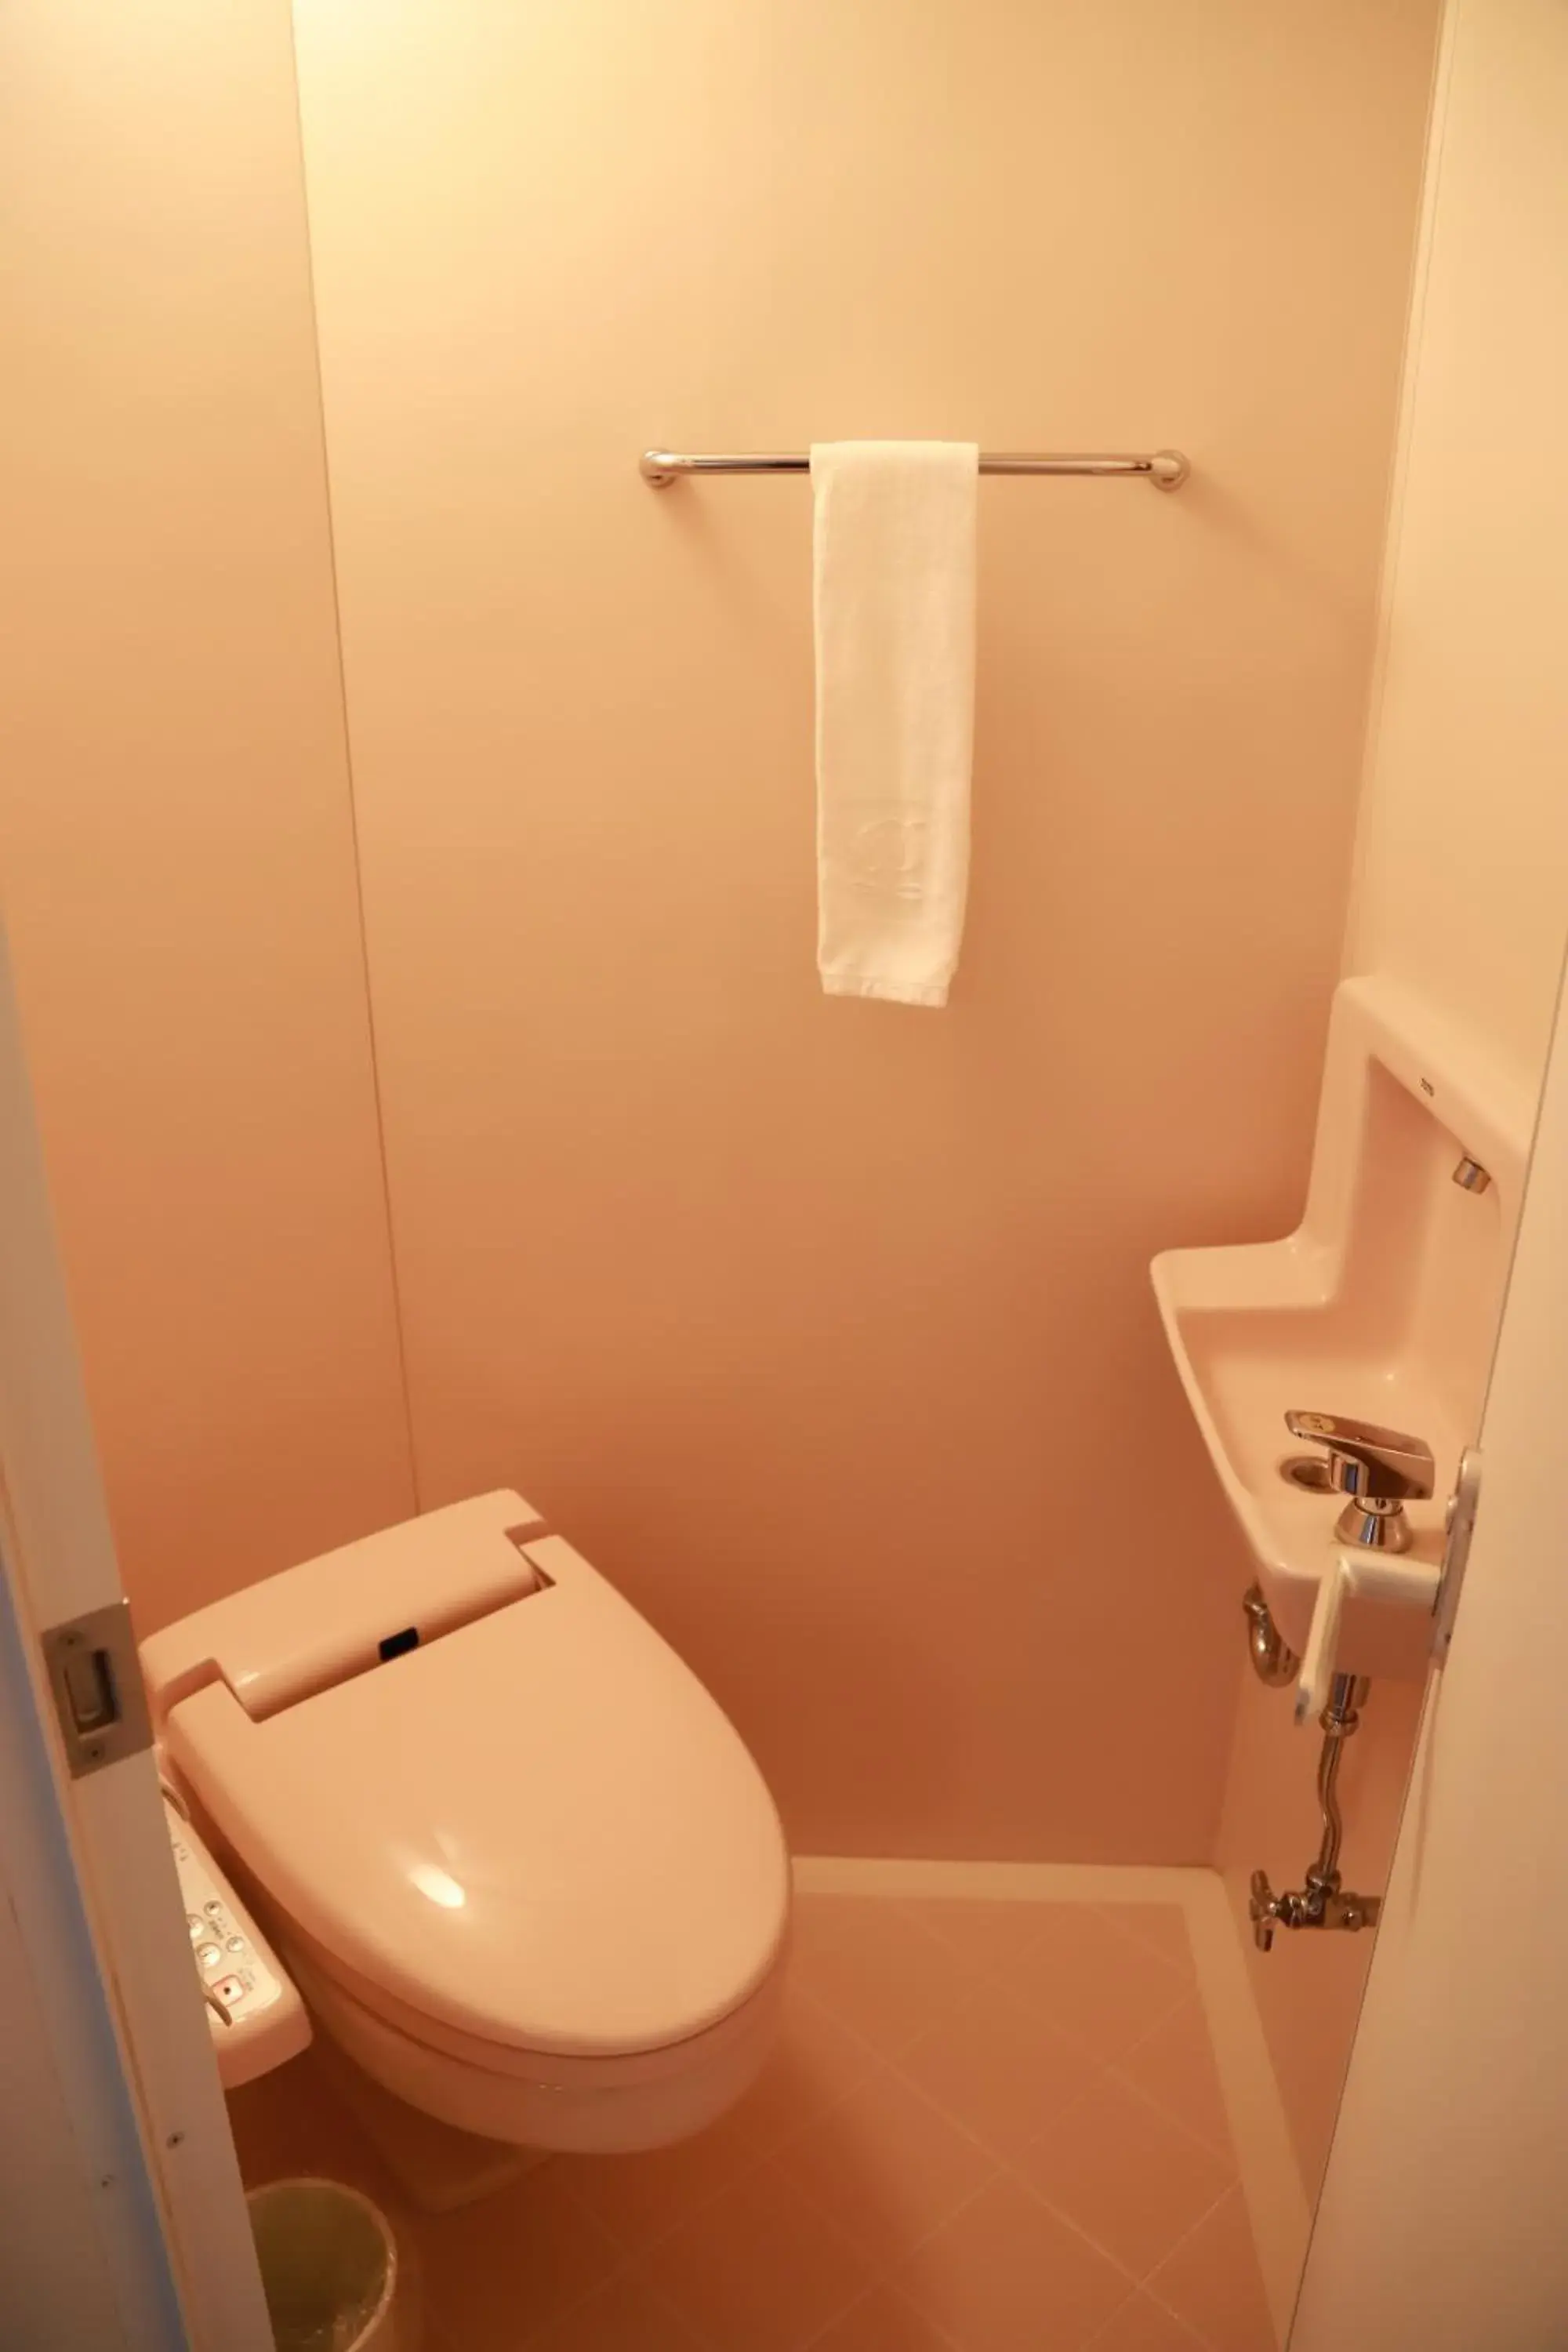 Bathroom in Naeba Prince Hotel